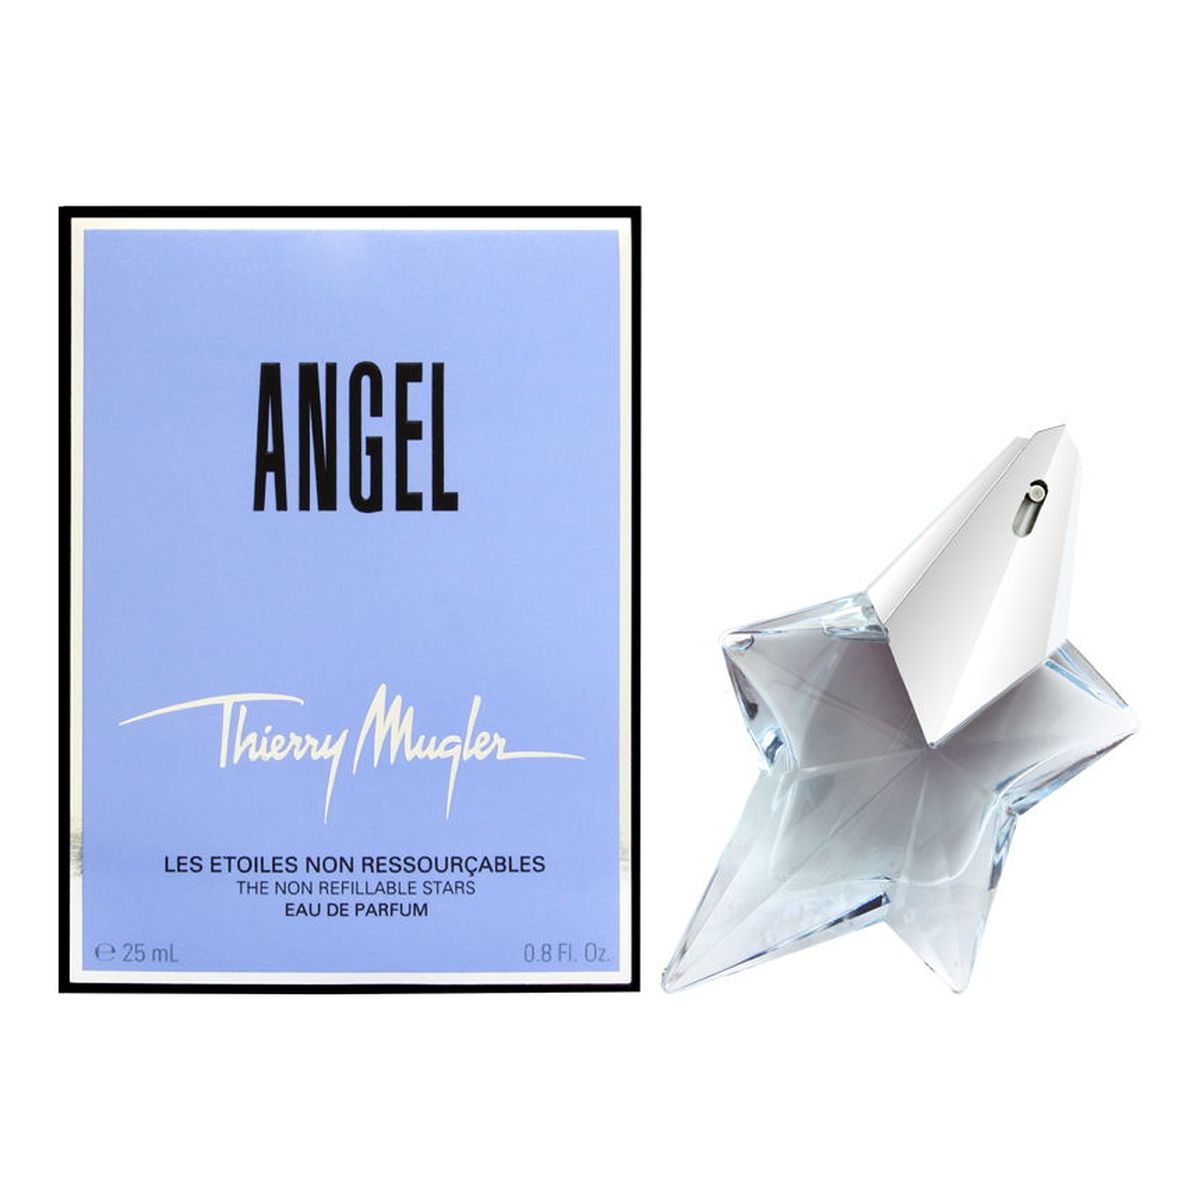 Thierry Mugler Angel Woda perfumowana 25ml